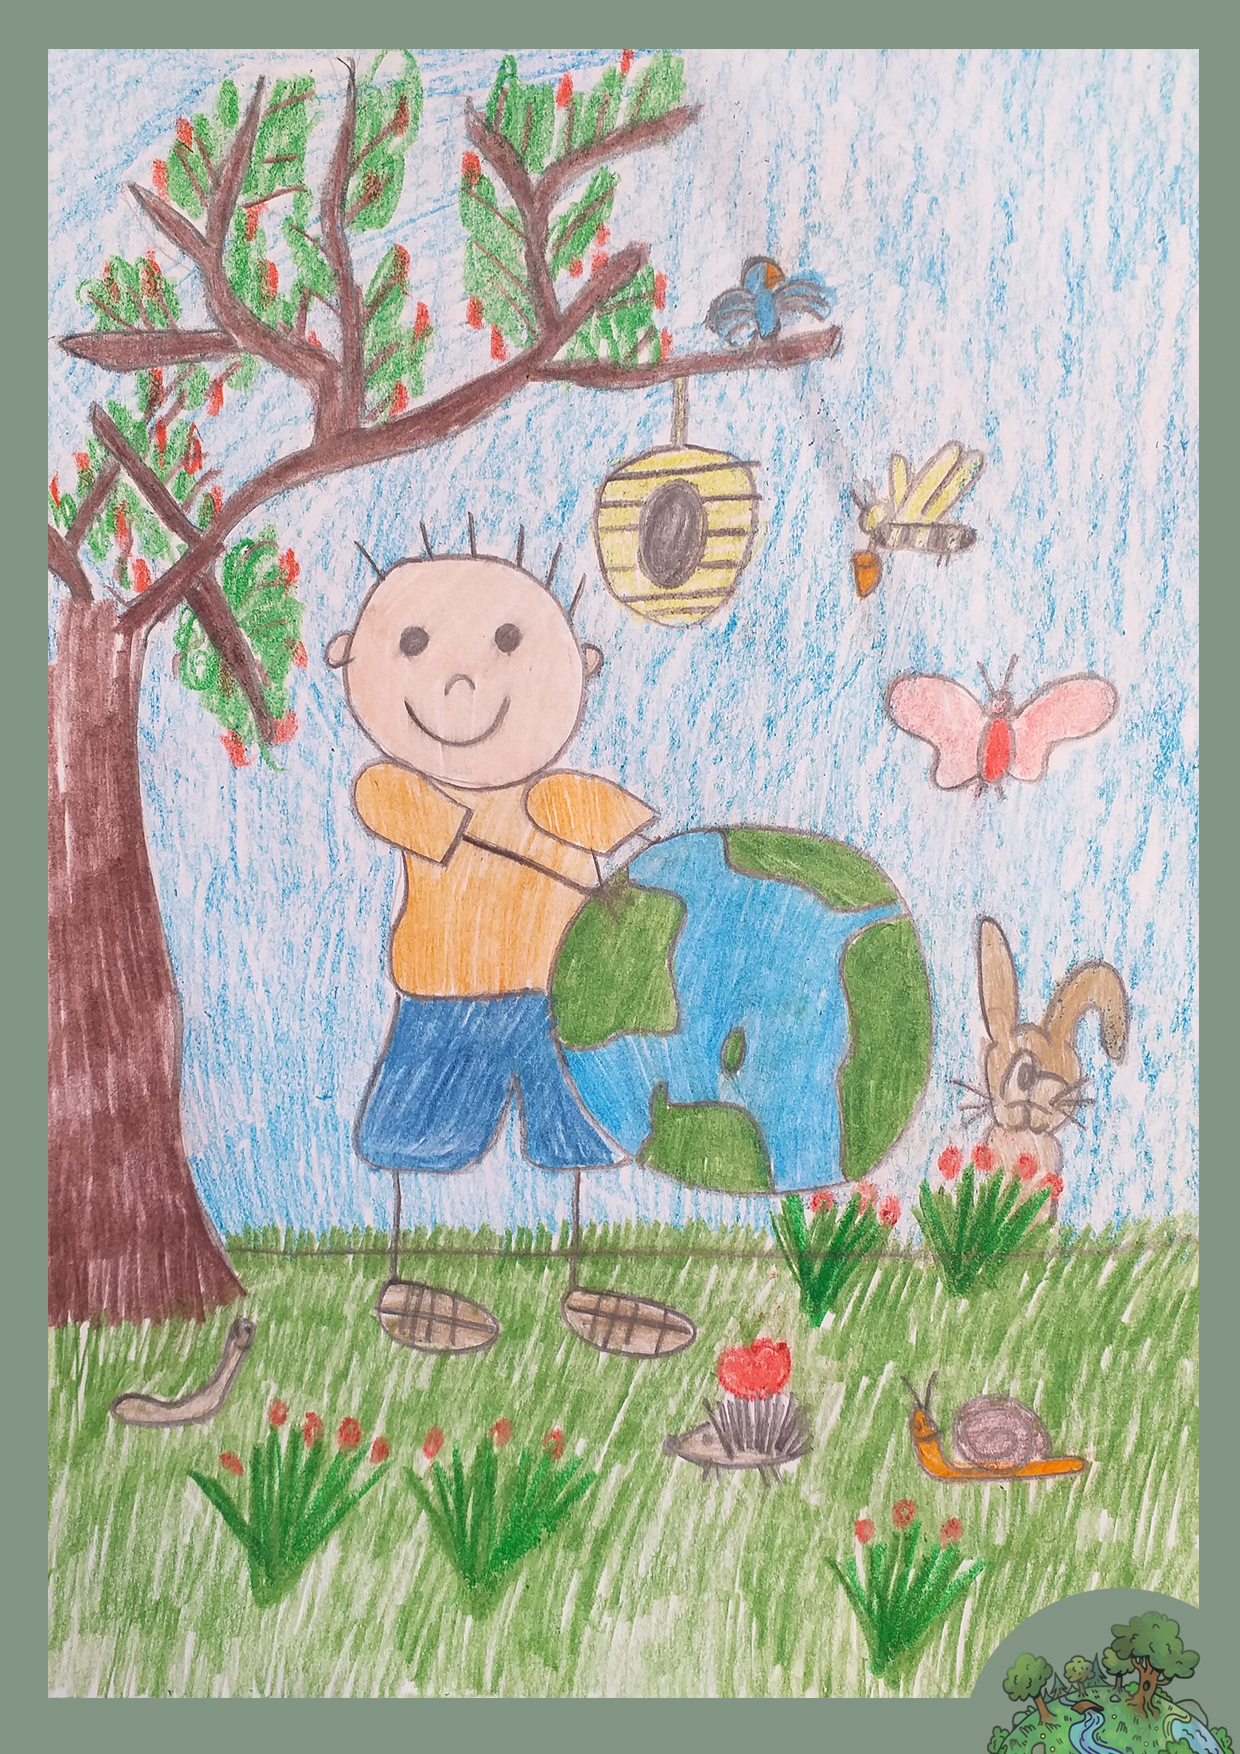 Horváth Mihály, 6 éves<br />A kép címe: A Föld a lakóival együtt értékes,vigyázzunk rá!<br />Alkalmazott technika: ceruza és zsírkréta